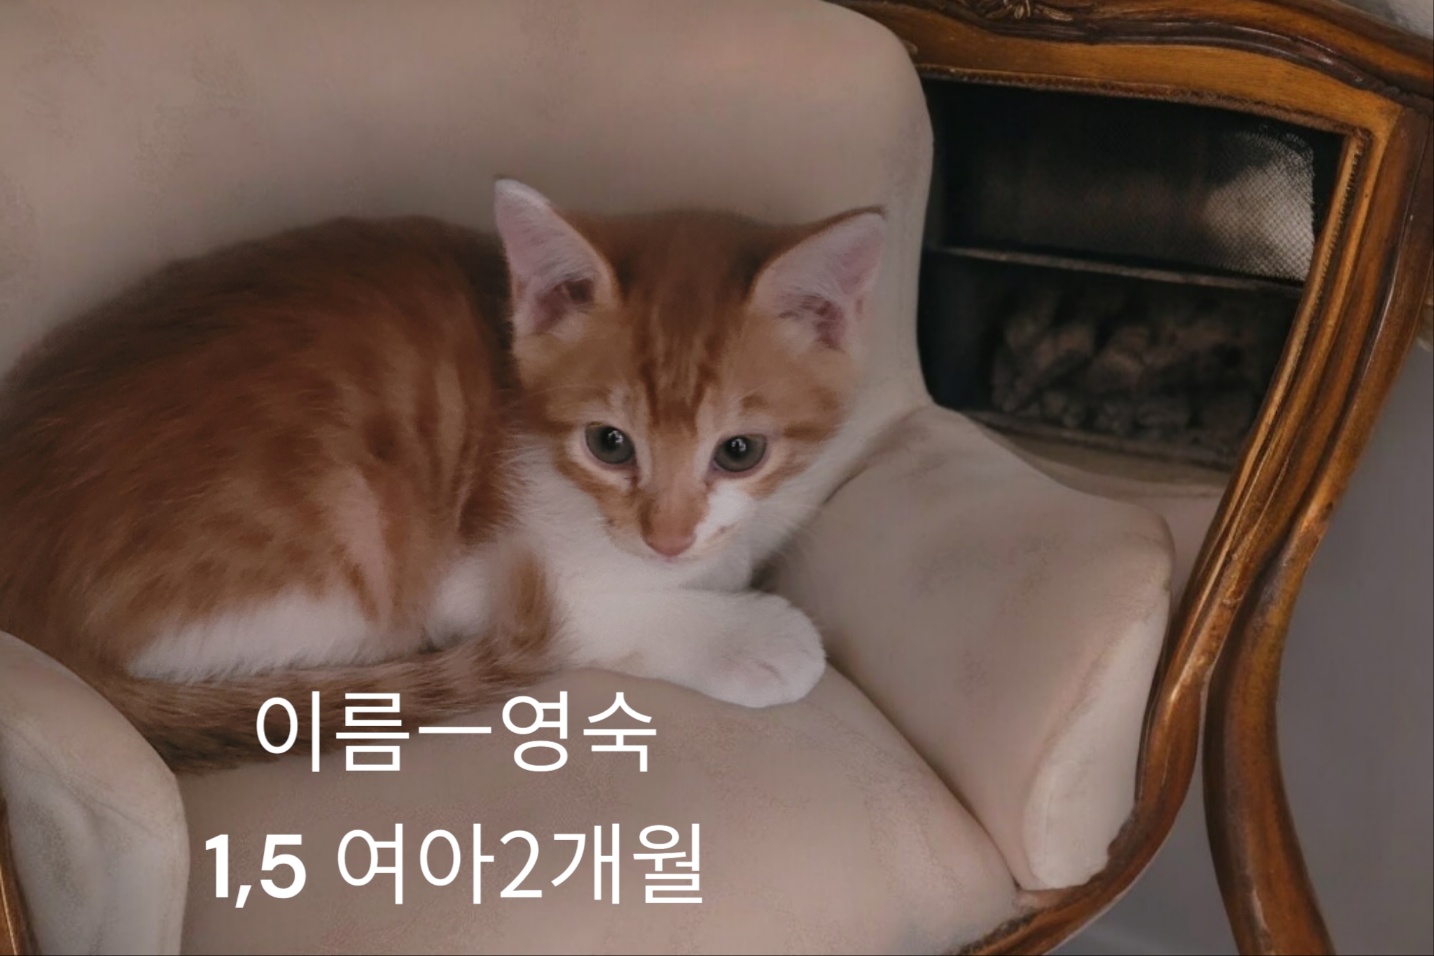 공고 번호가 경북-성주-2024-00249인 한국 고양이 동물 사진